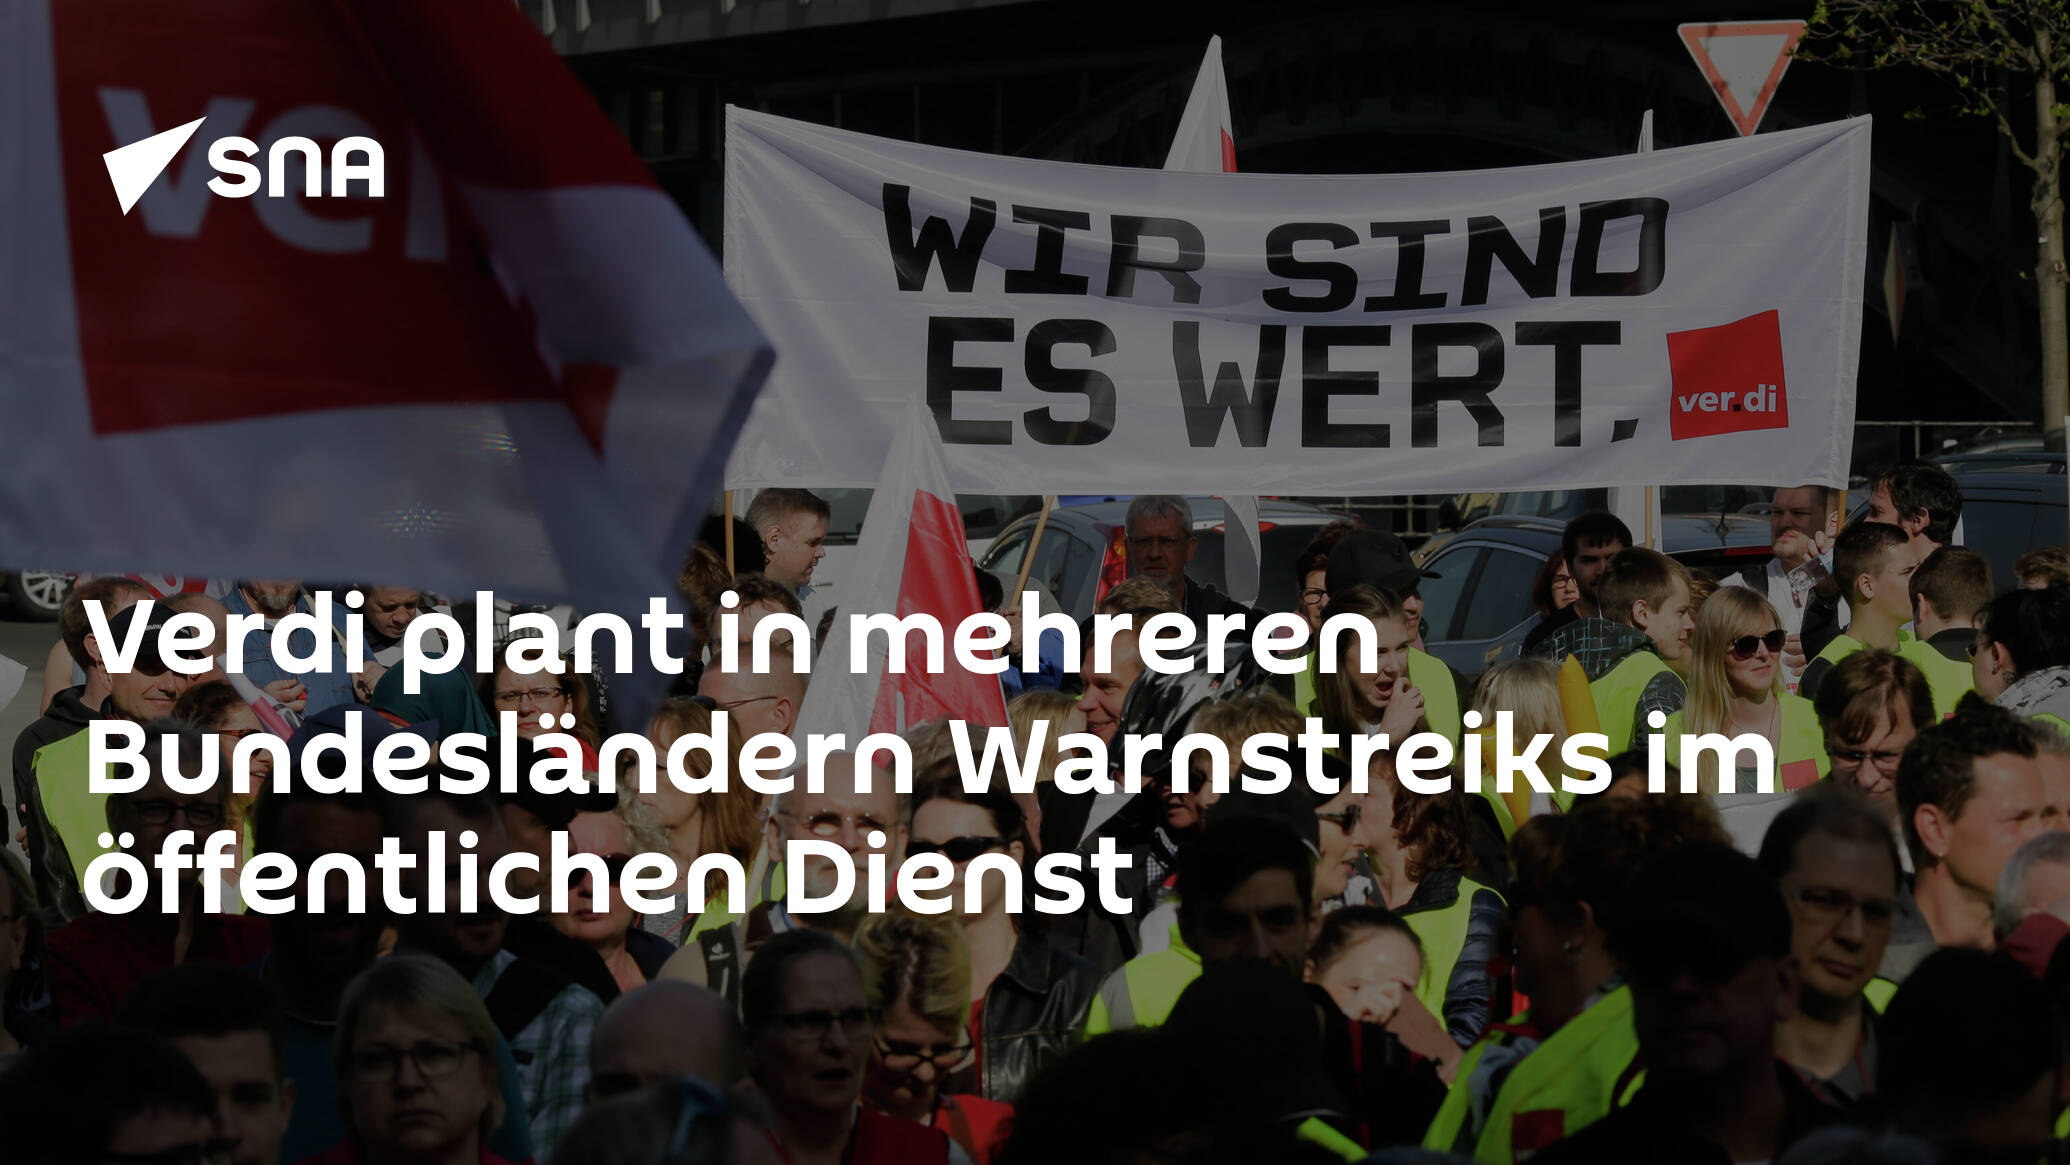 verdi-plant-in-mehreren-bundeslandern-warnstreiks-im-offentlichen-dienst